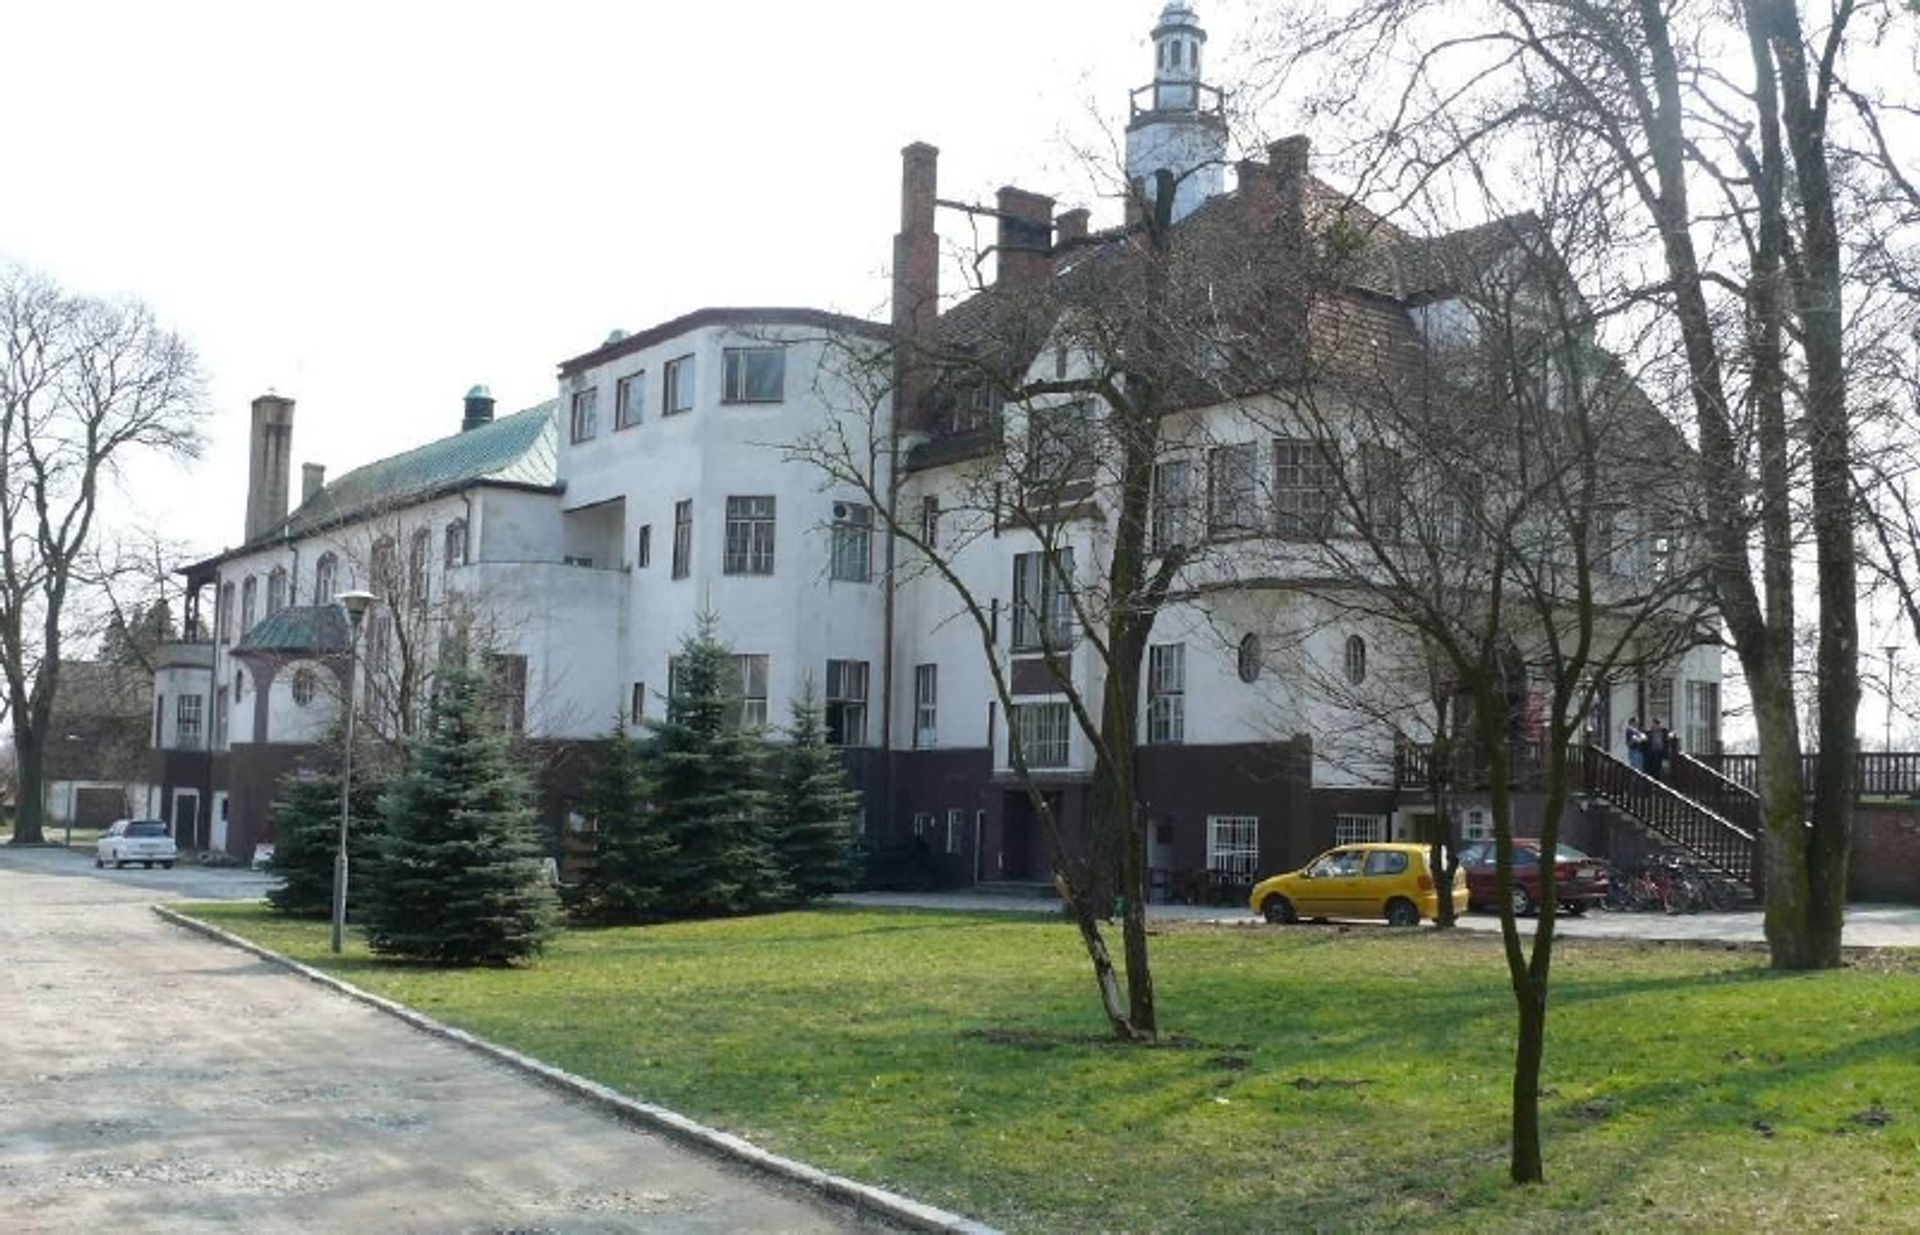  Zameczek, pałac i ośrodek wypoczynkowy. Wrocławskie uczelnie sprzedają nieruchomości